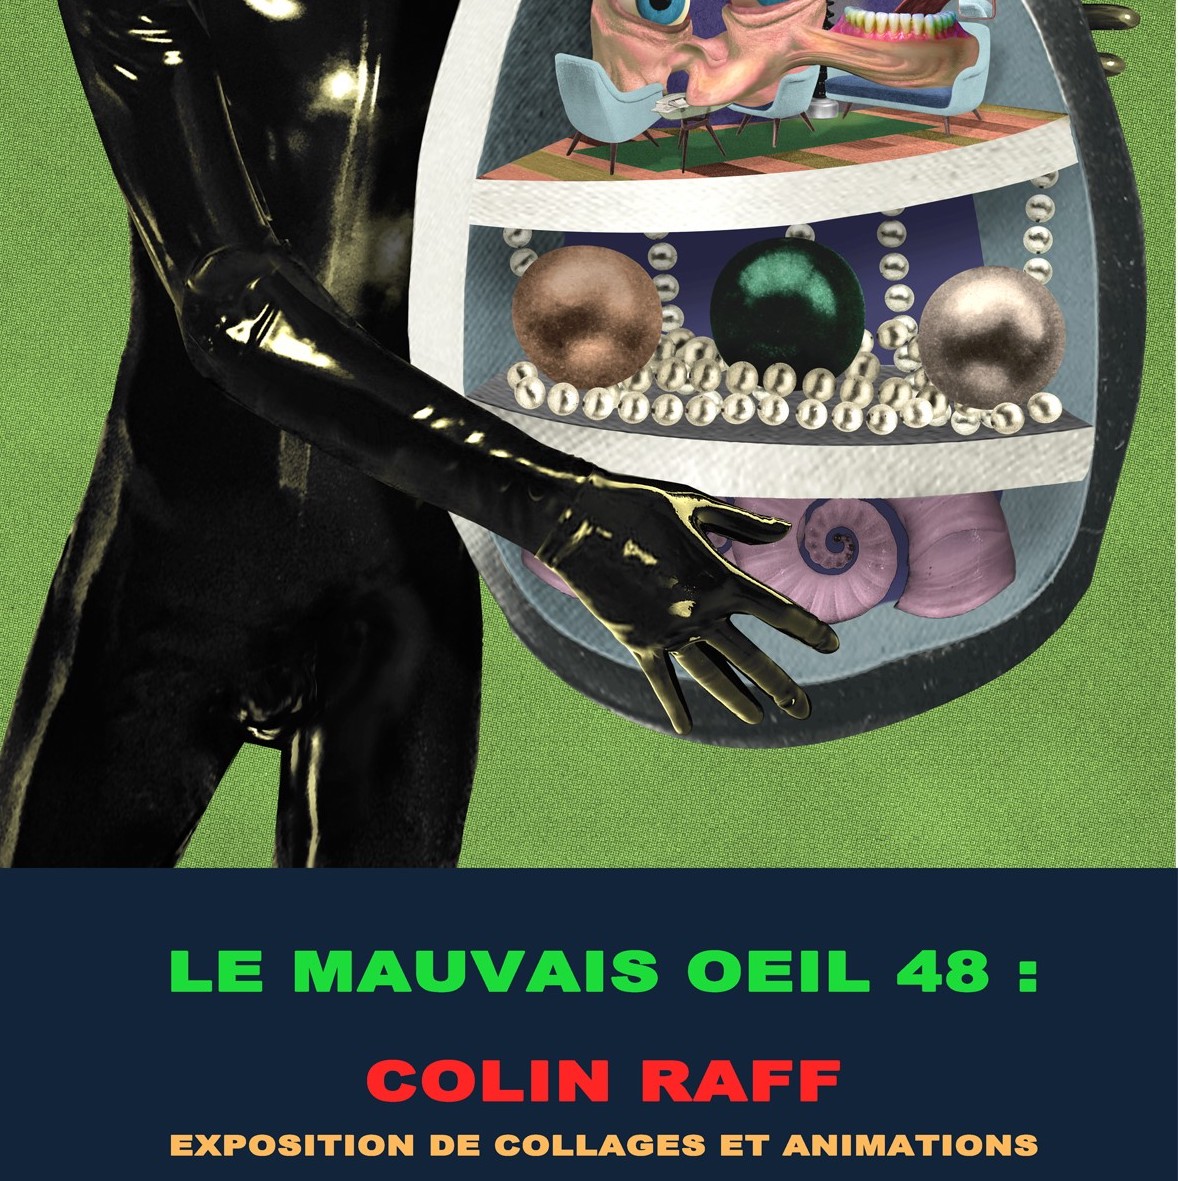 Le Mauvais Œil 48 : Colin Raff Exposition Du 18 mai au 17 juillet 2019 @ Le Dernier Cri